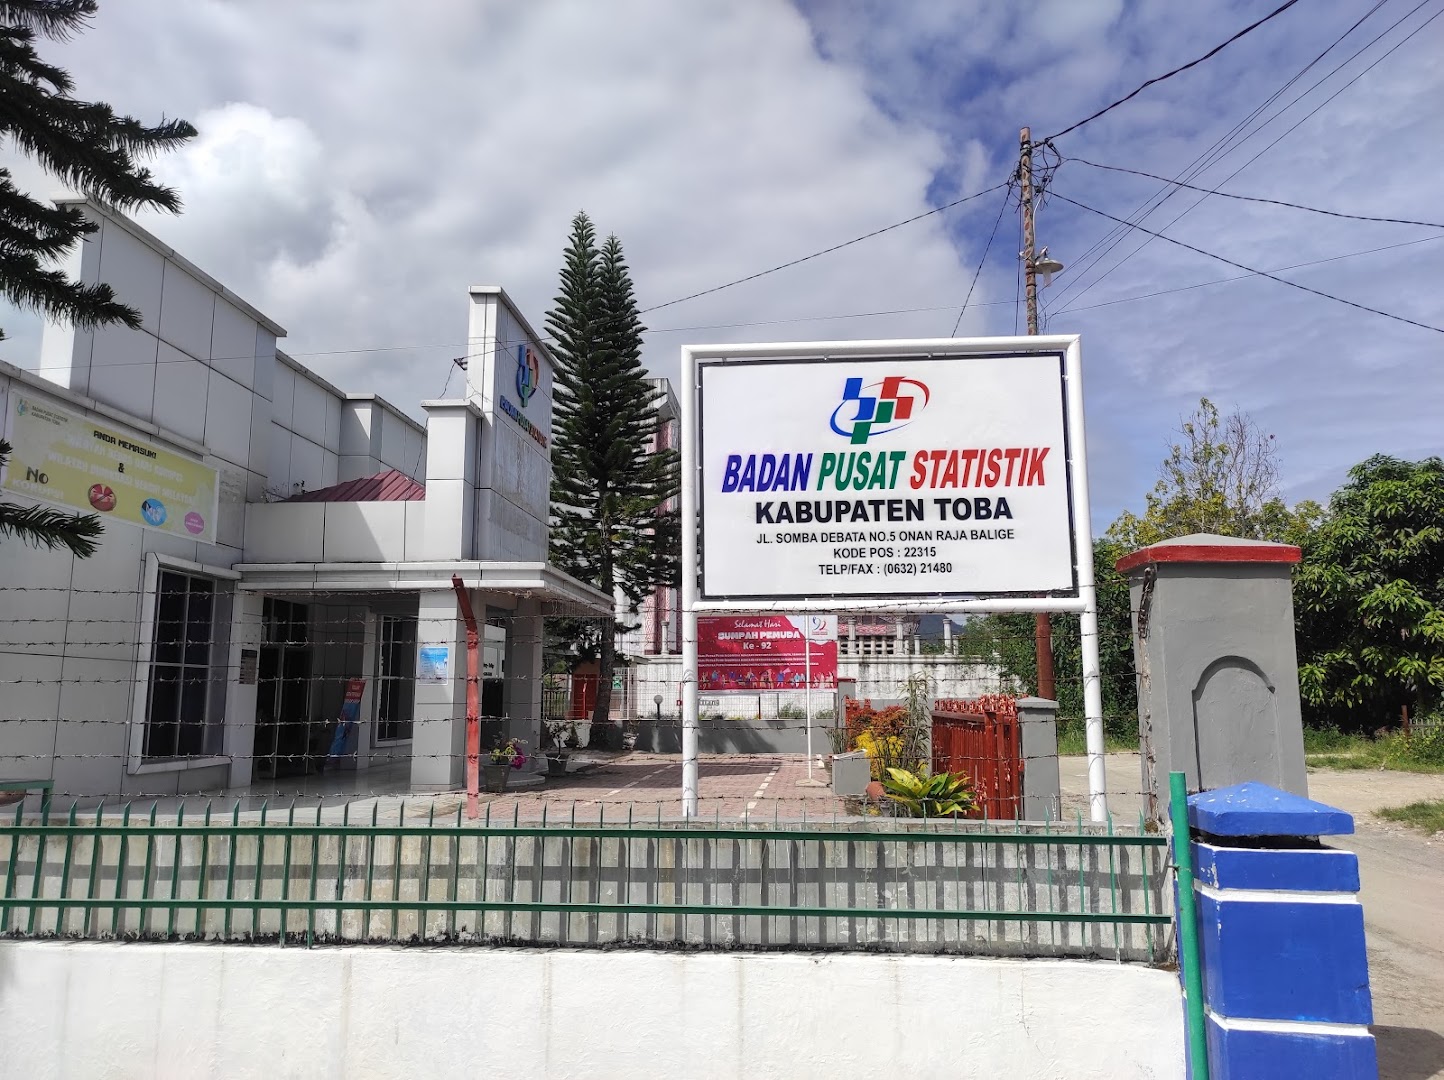 Badan Pusat Statistik Kabupaten Toba Photo